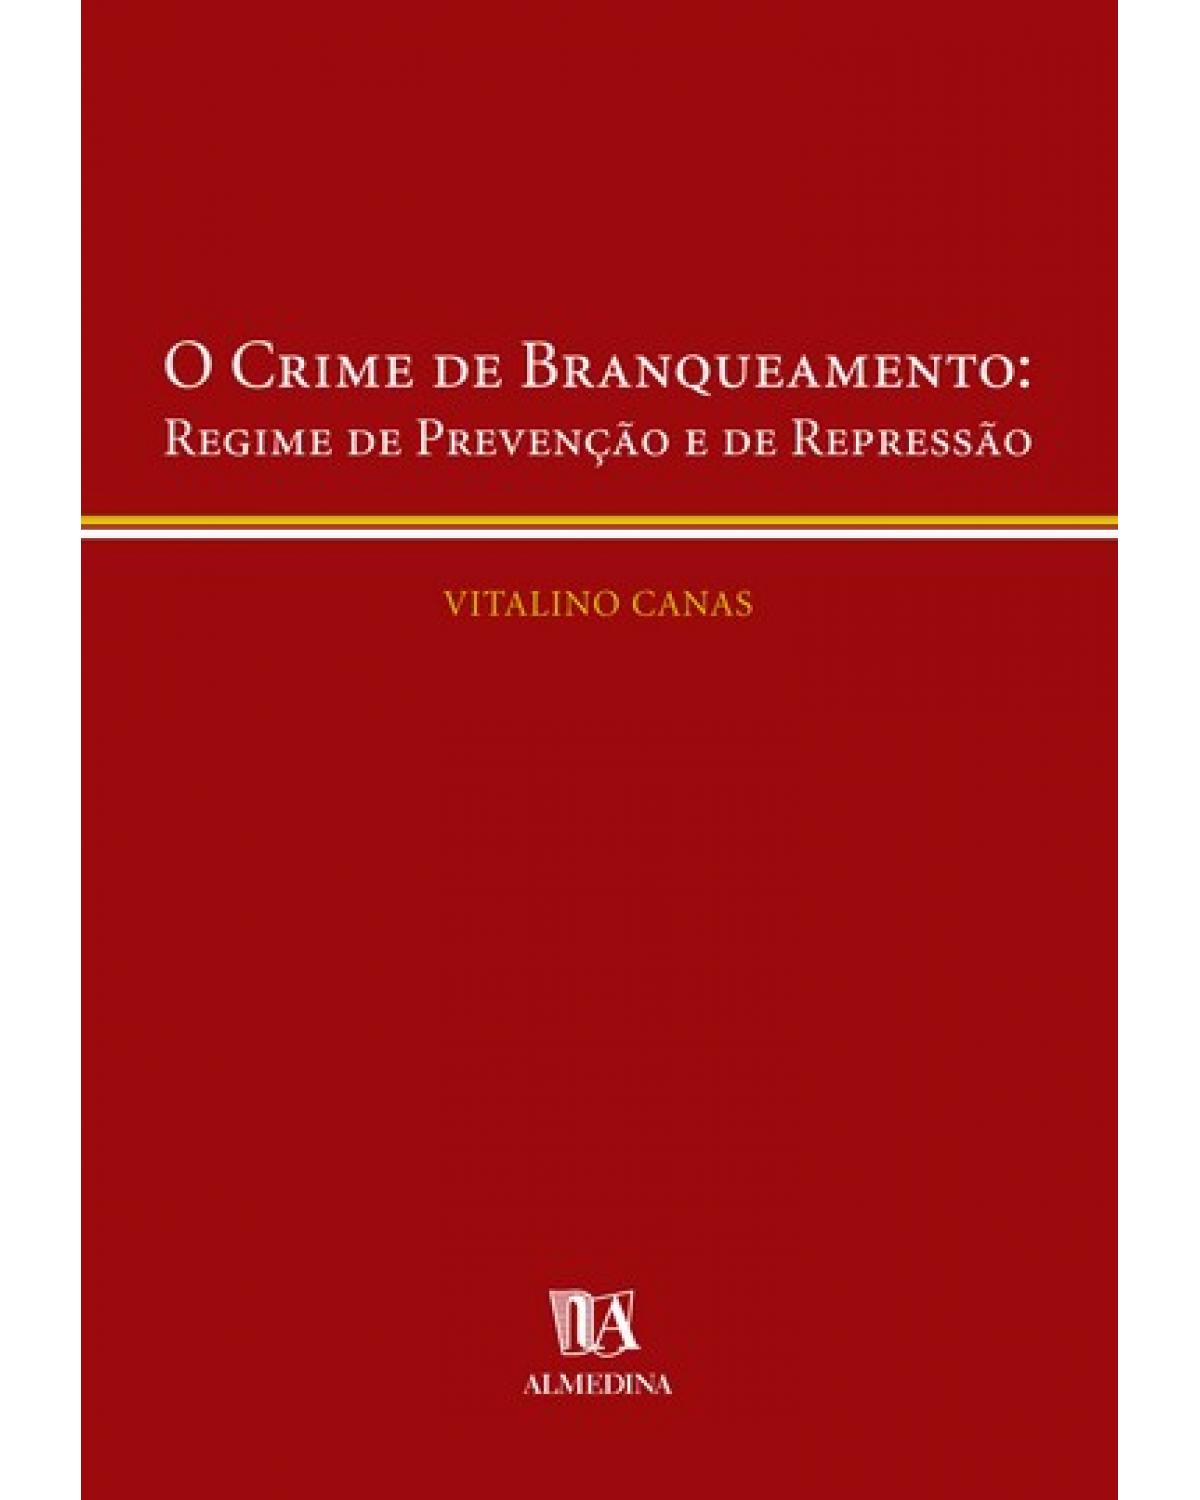 O crime de branqueamento - regime de prevenção e de repressão - 1ª Edição | 2004